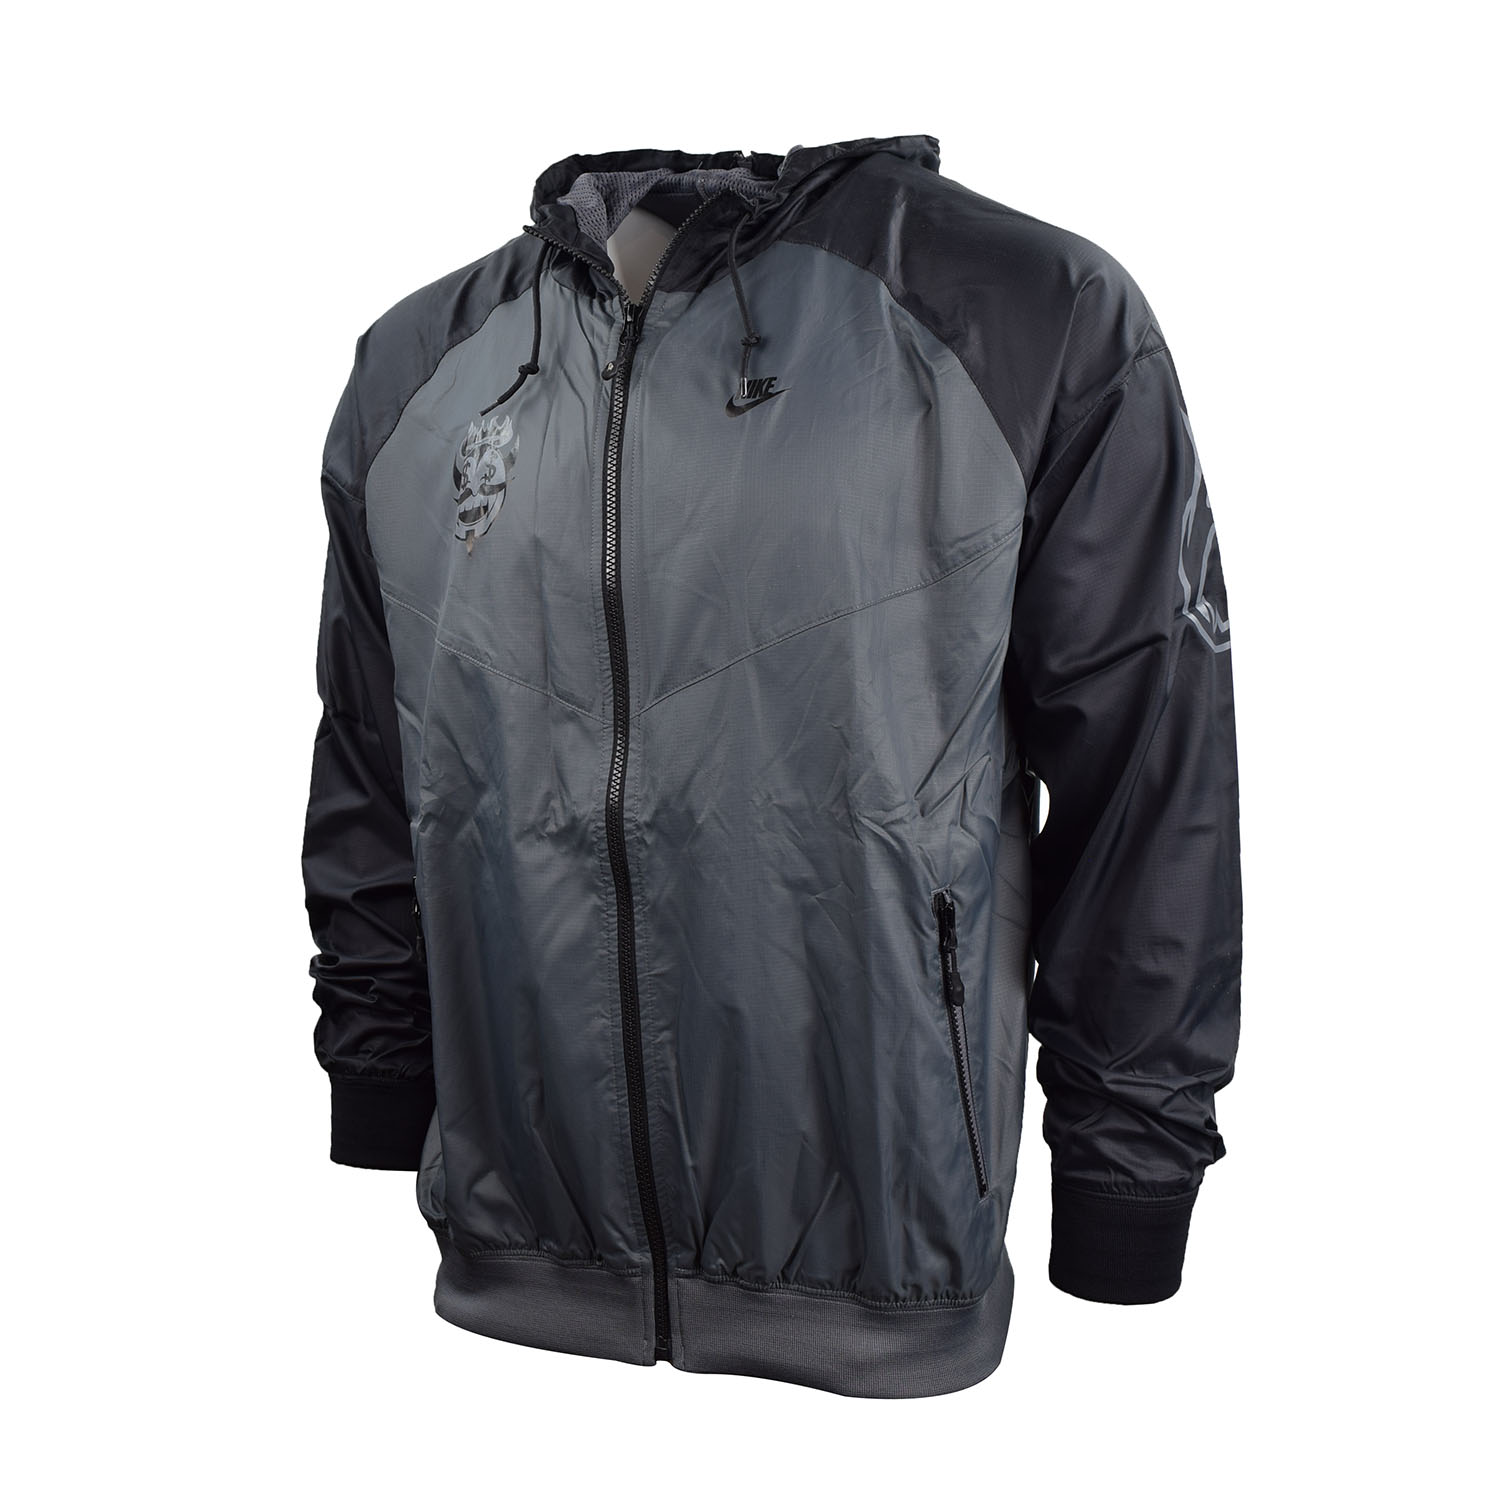 Nike Men's Mascot Split Windrunner Herren Full Zipped Jacket Black-Grey 341447-021 - image 1 of 3